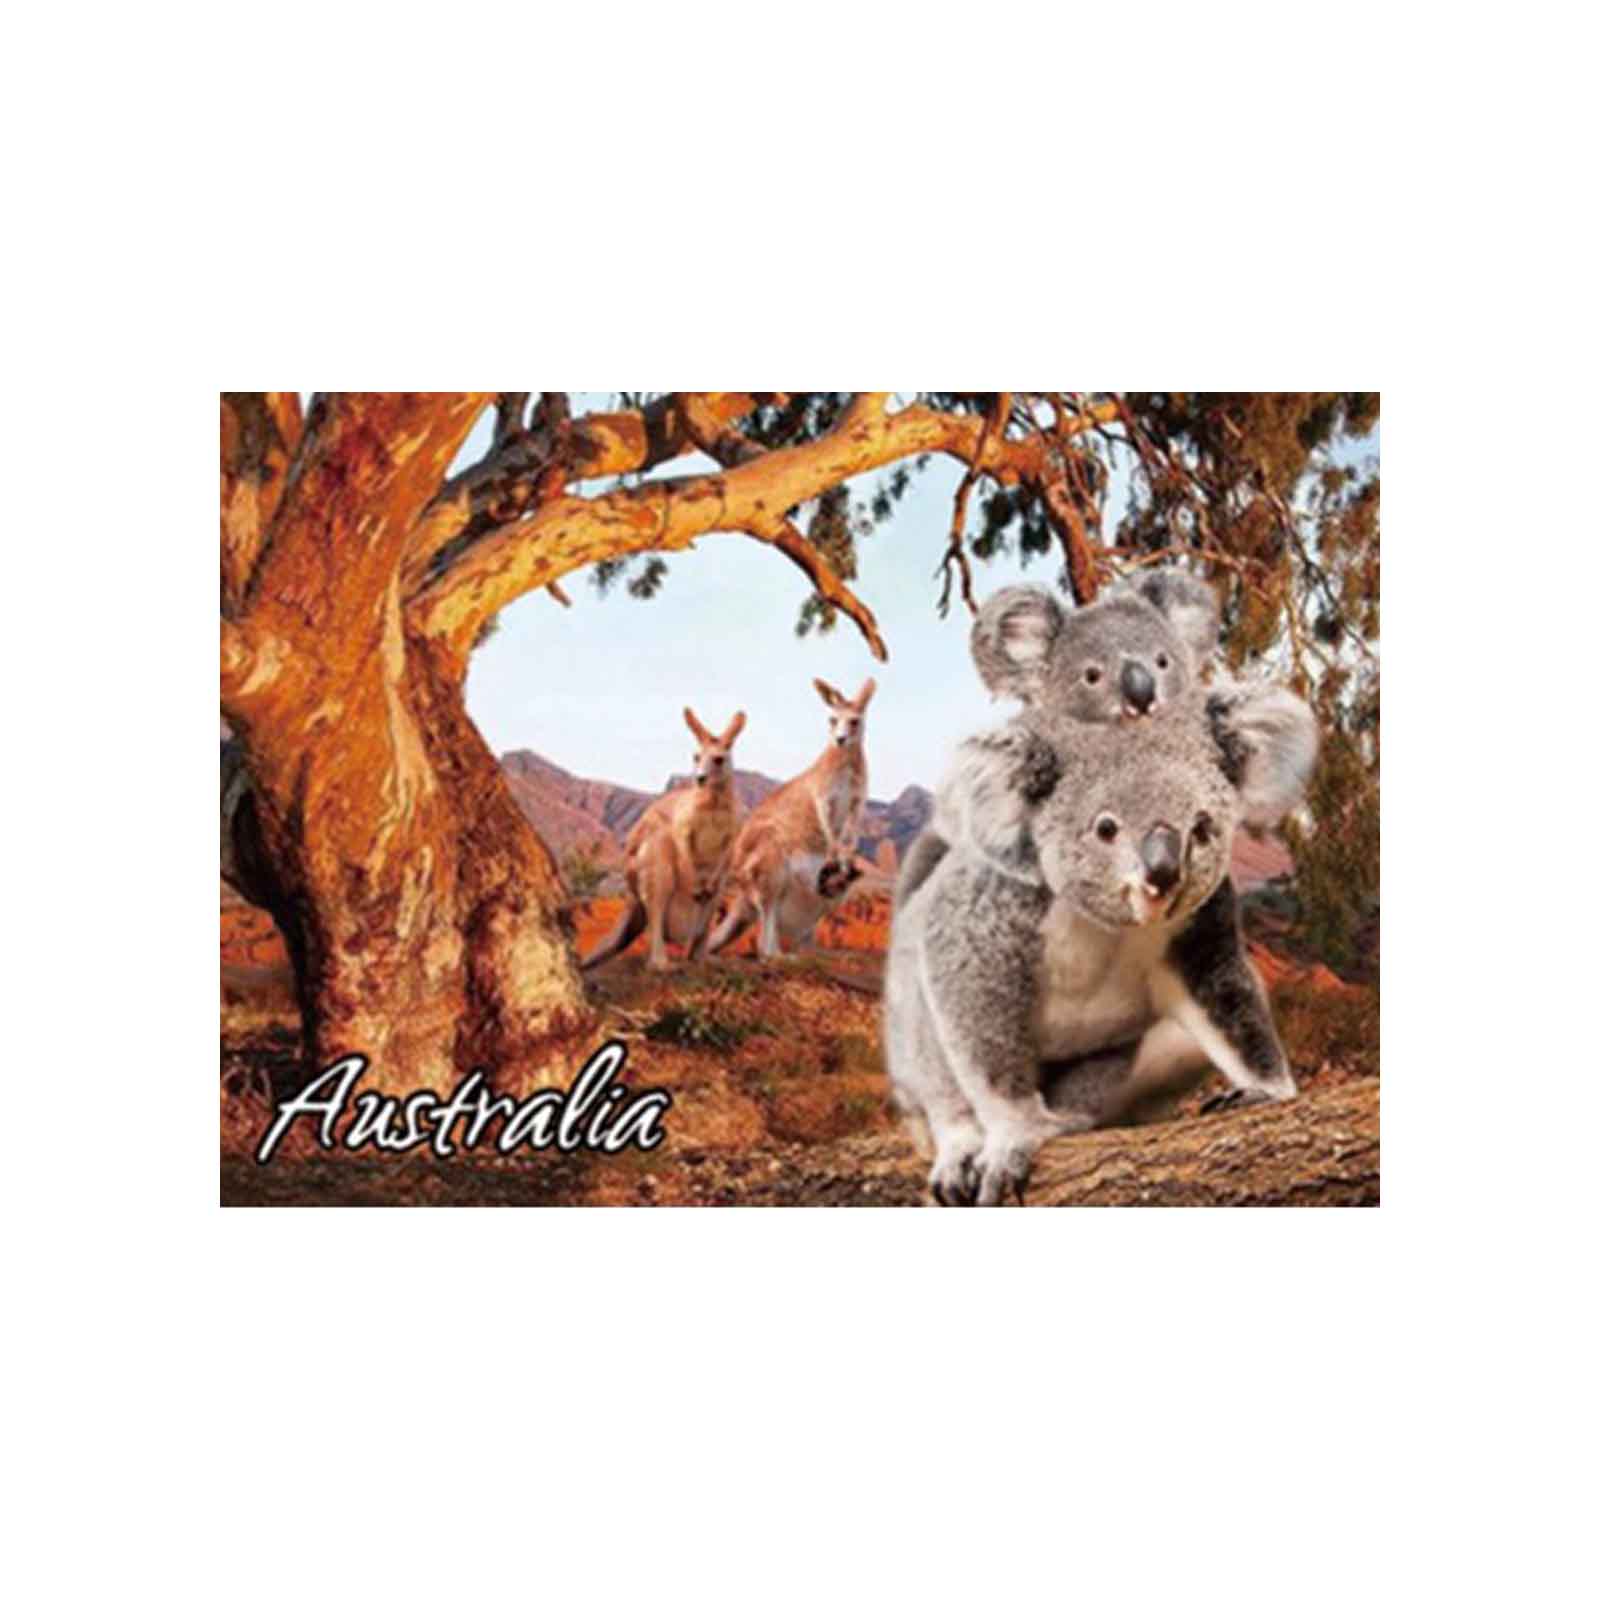 3d-Post-Card-Kangaroo-Koala-Aus